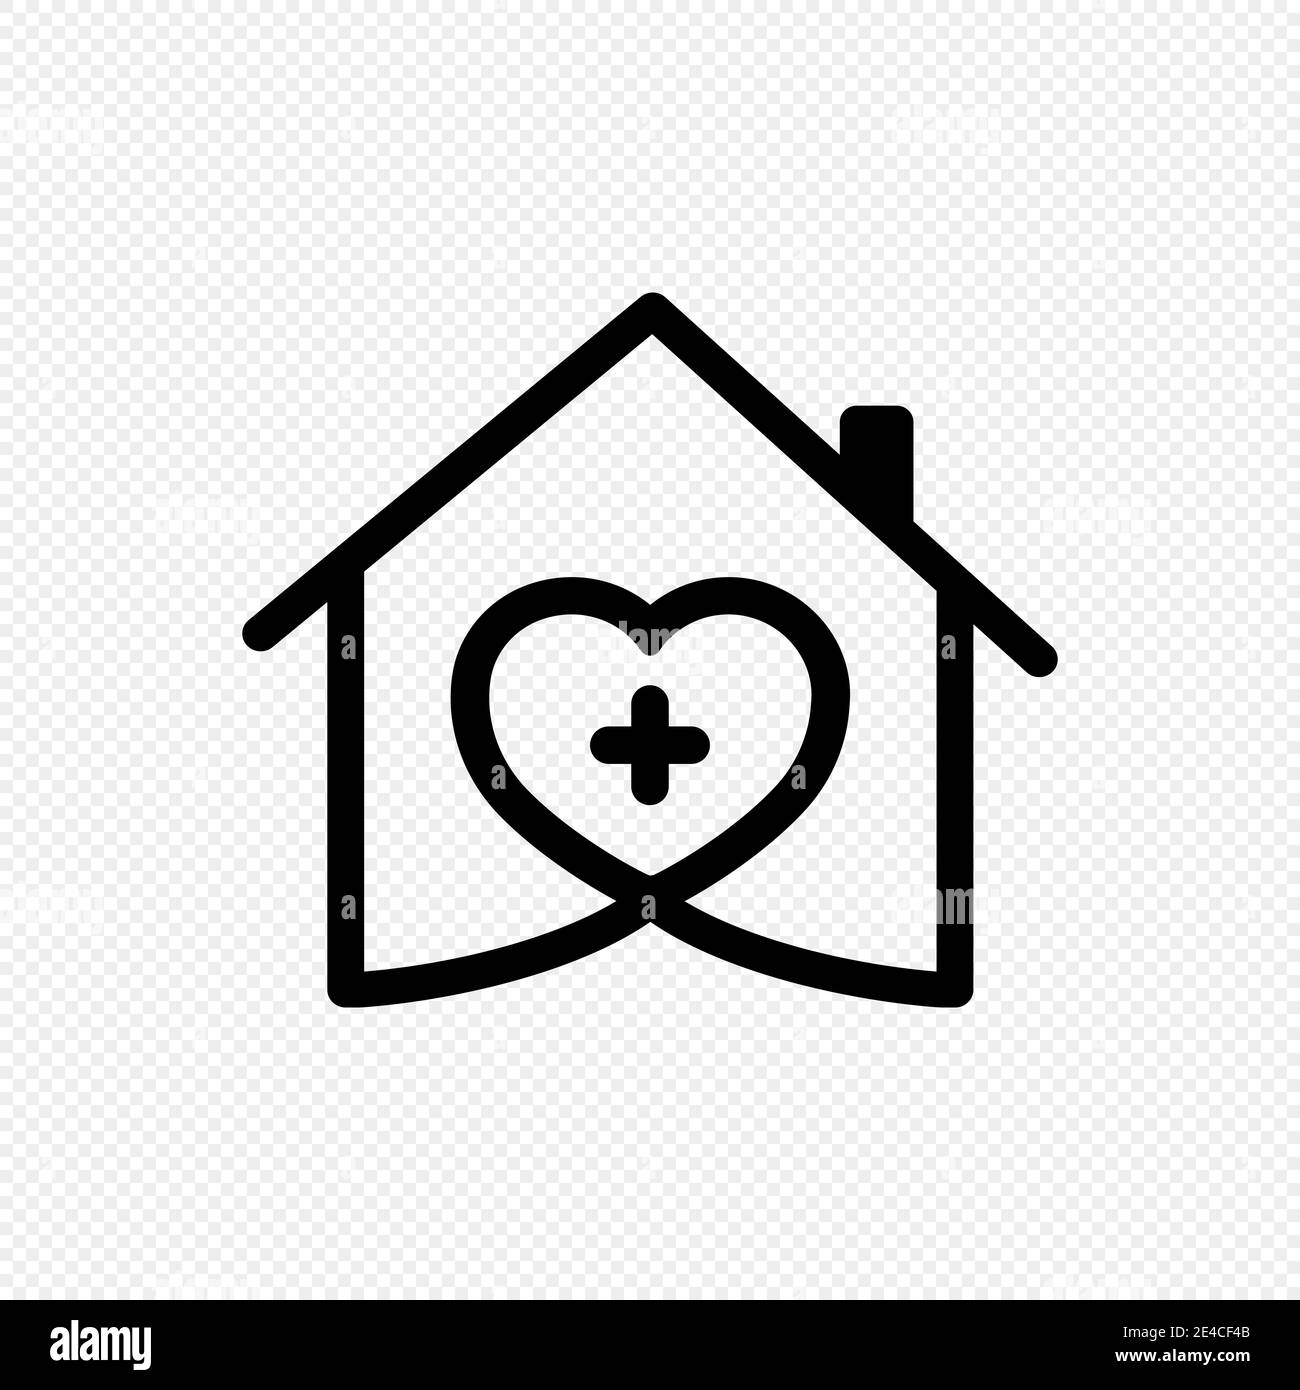 https://c8.alamy.com/comp/2E4CF4B/home-care-icon-medical-house-logo-2E4CF4B.jpg